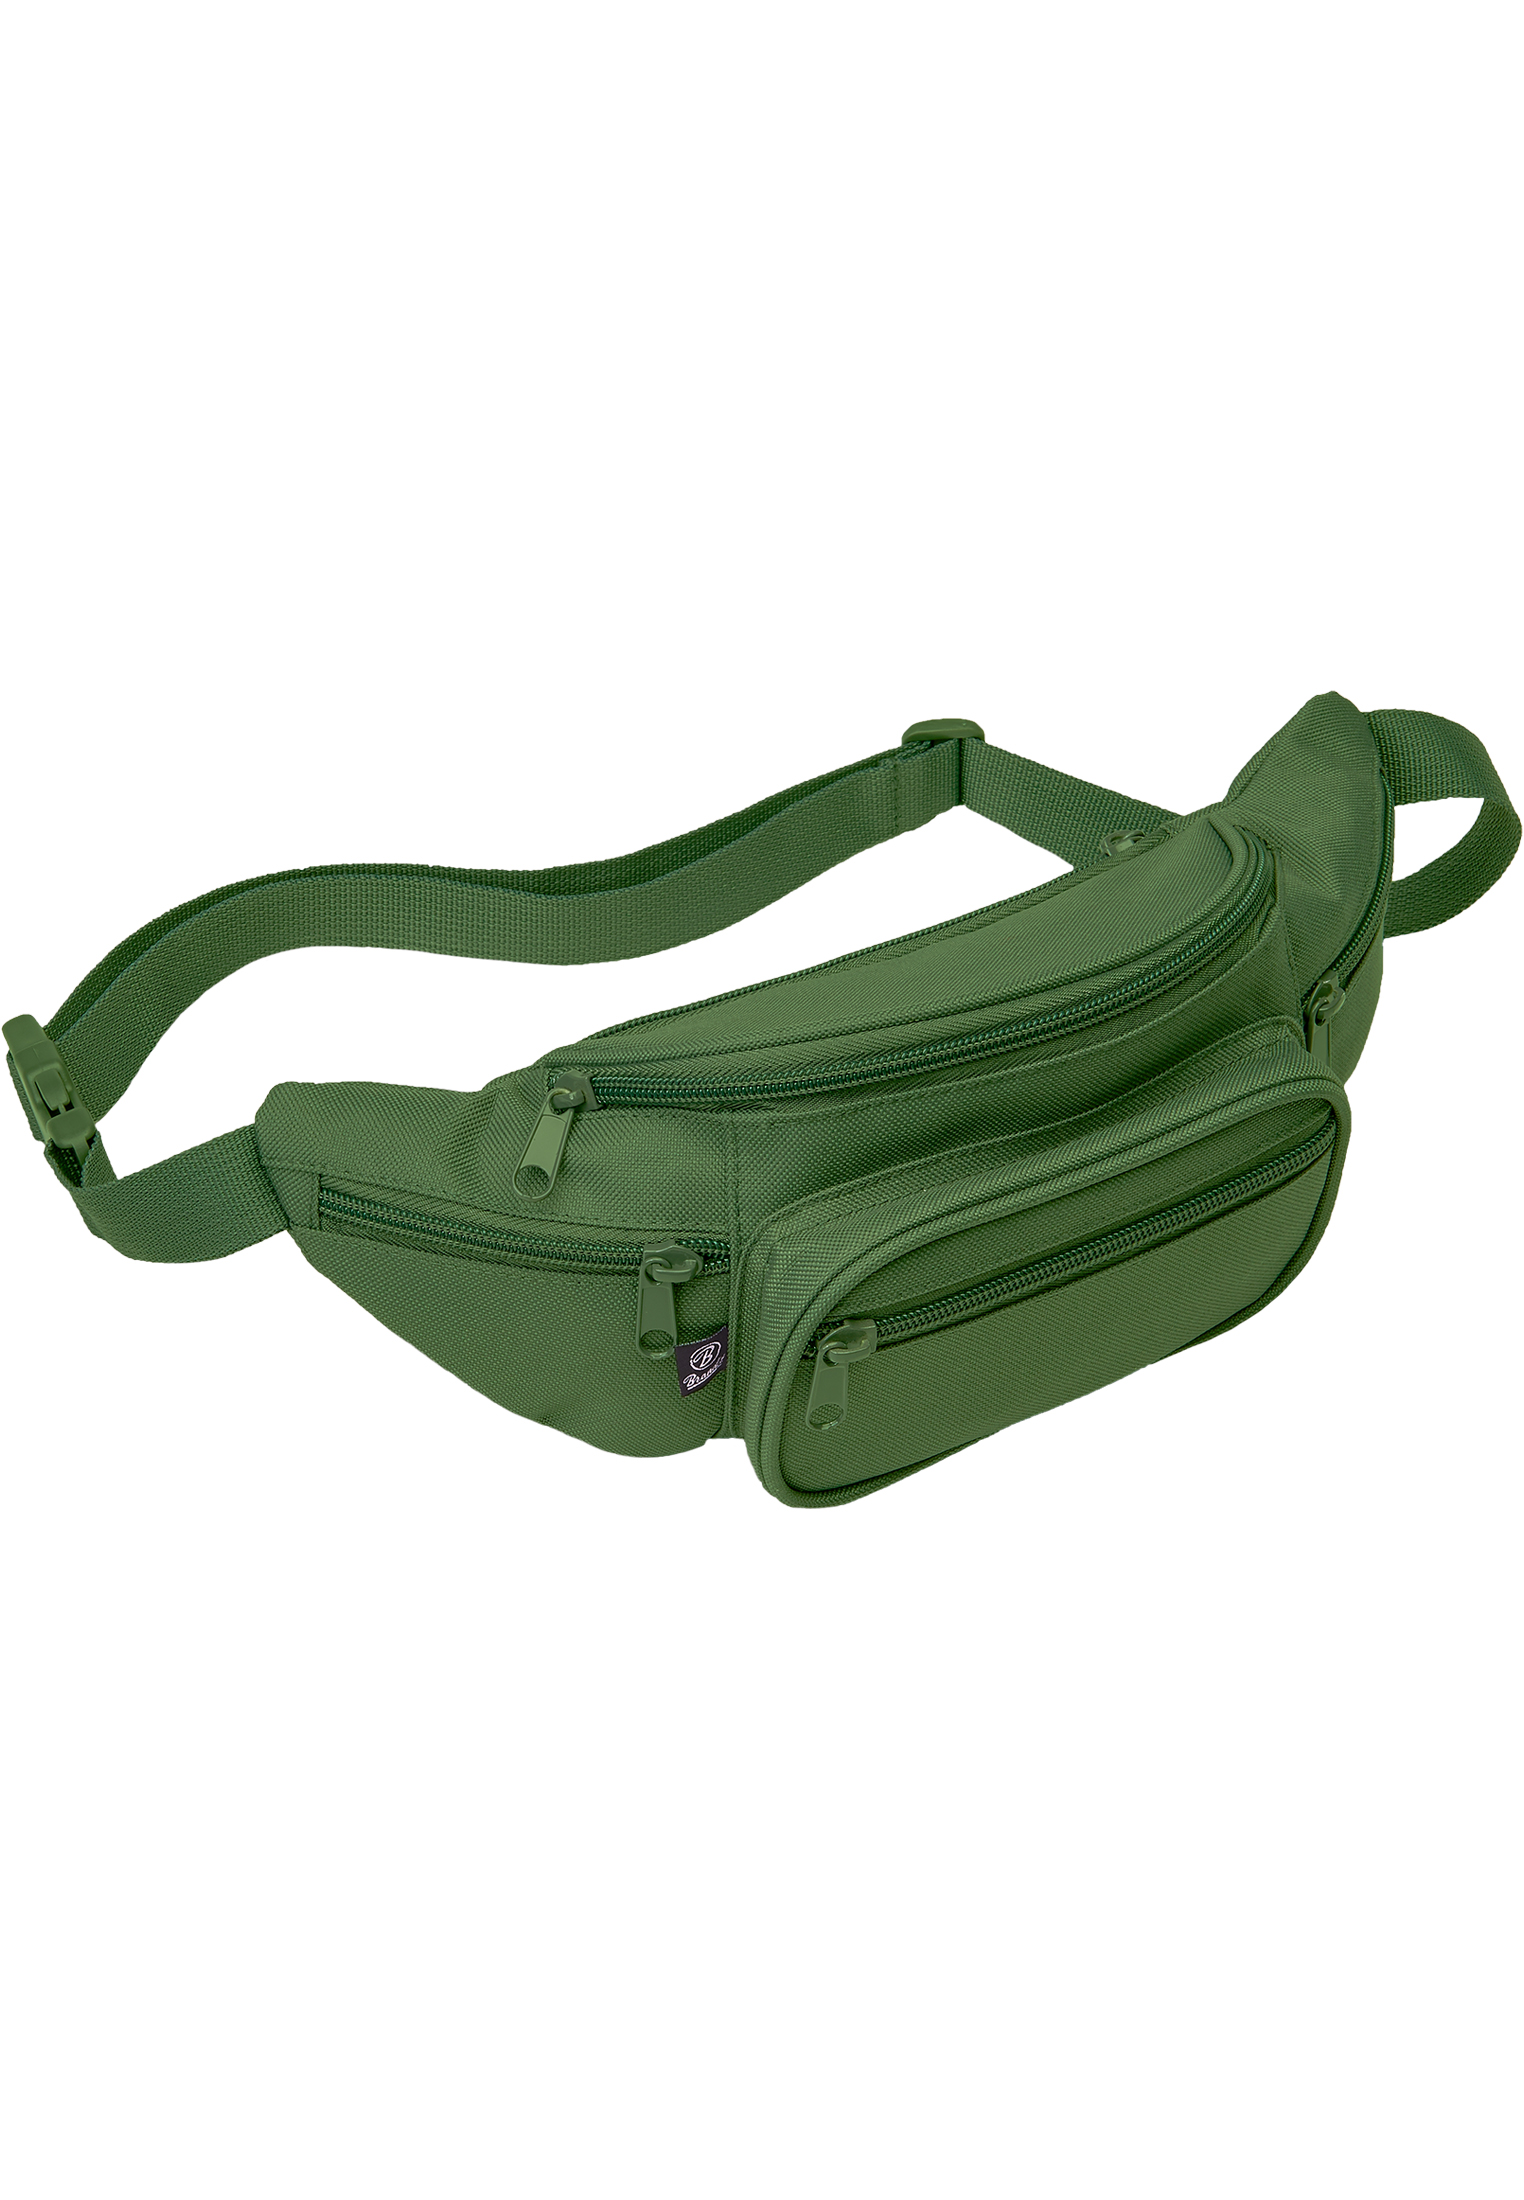 Taschen Pocket Hip Bag in Farbe olive